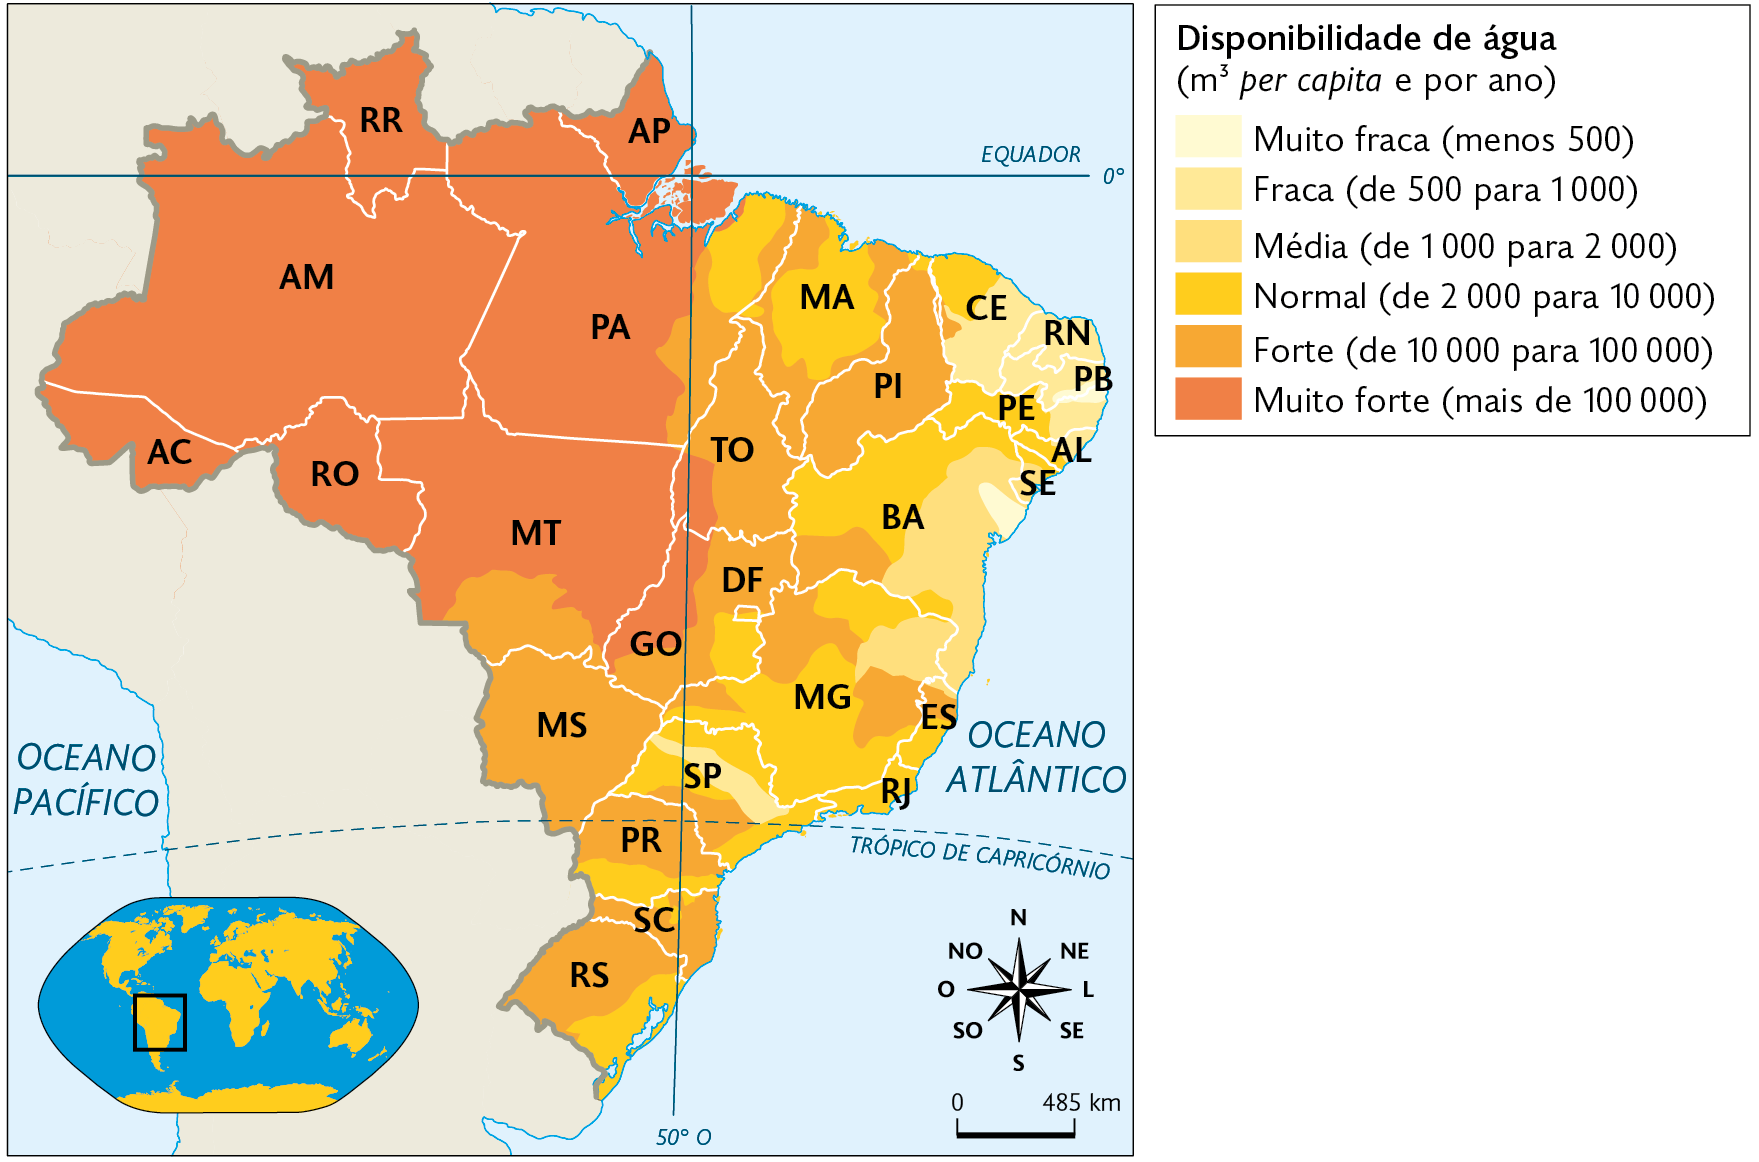 Mapa. Disponibilidade de água no Brasil (2009). Disponibilidade de água (metros cúbicos per capita e por ano). 
Muito fraca (menos 500): sul da Paraíba e área no leste da Bahia. 
Fraca (de 500 para 1000): em maior concentração nos estados da Região Nordeste. Média (de 1.000 para 2.000): em maior concentração na Região Nordeste. Normal (de 2000 para 10000): nos estados do Nordeste, Sudeste e em áreas dispersas nos estados do Sul. Forte (de 10000 para 100000): quase a totalidade do Tocantins, e Piauí, áreas dispersas nas Regiões Sudeste e Sul, todo o Mato Grosso do Sul e sul do Mato Grosso e leste e sul de Goiás. Muito forte (mais de 100000): toda a Região Norte, norte do Mato Grosso e oeste de Goiás. No canto inferior esquerdo, mapa de localização, planisfério destacando a região descrita. No canto inferior direito, rosa dos ventos e a escala: 485 quilômetros por centímetro.